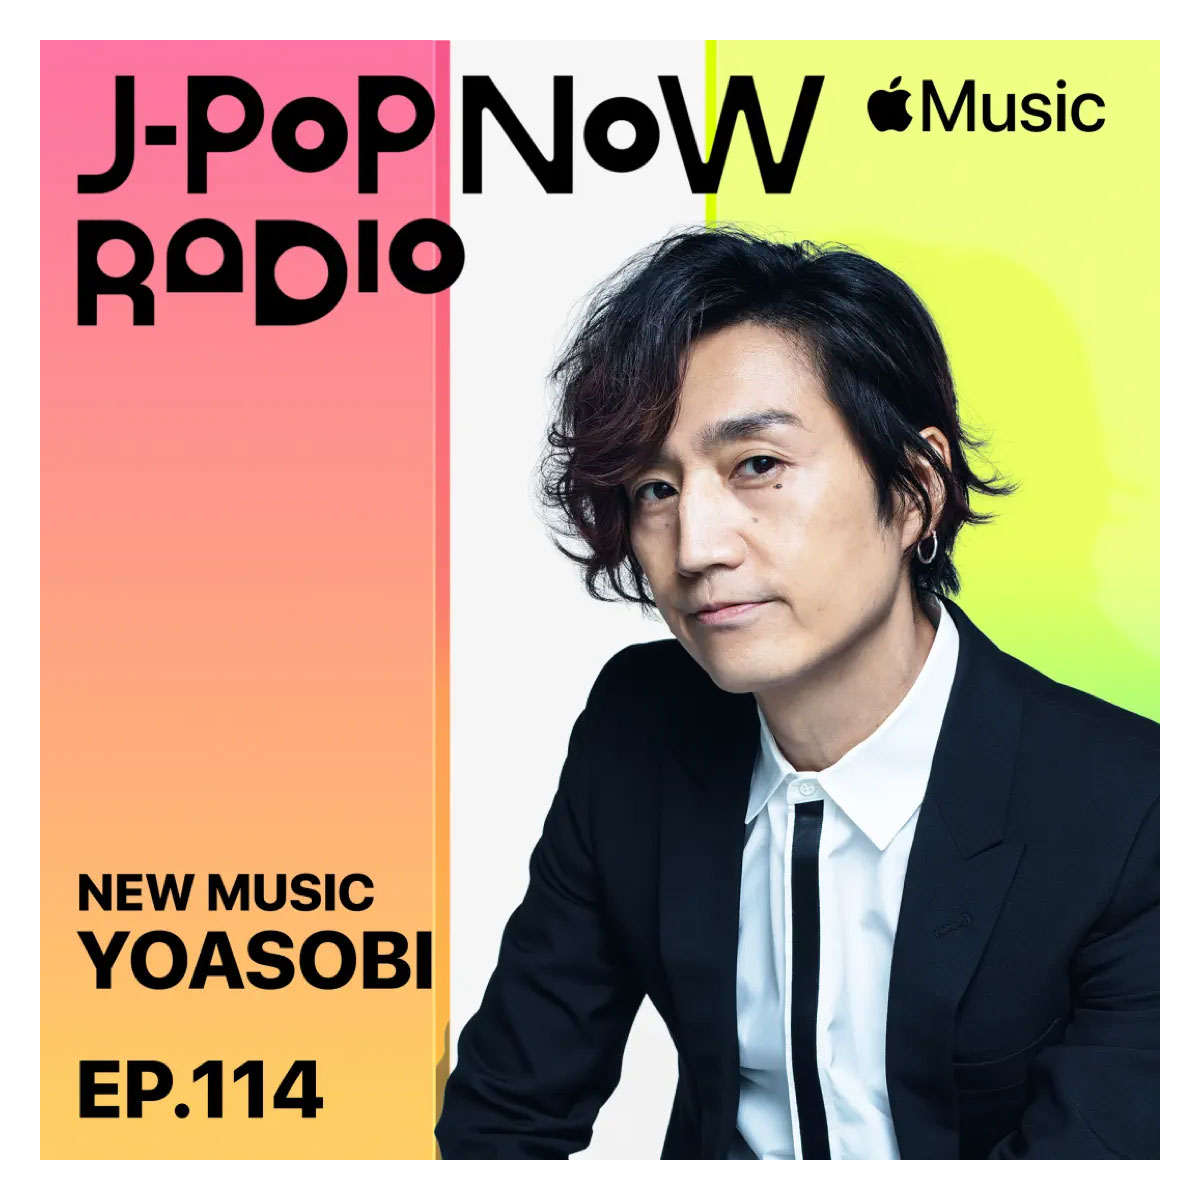 J-Pop Now Radio with Kentaro Ochiai 特集：YOASOBI